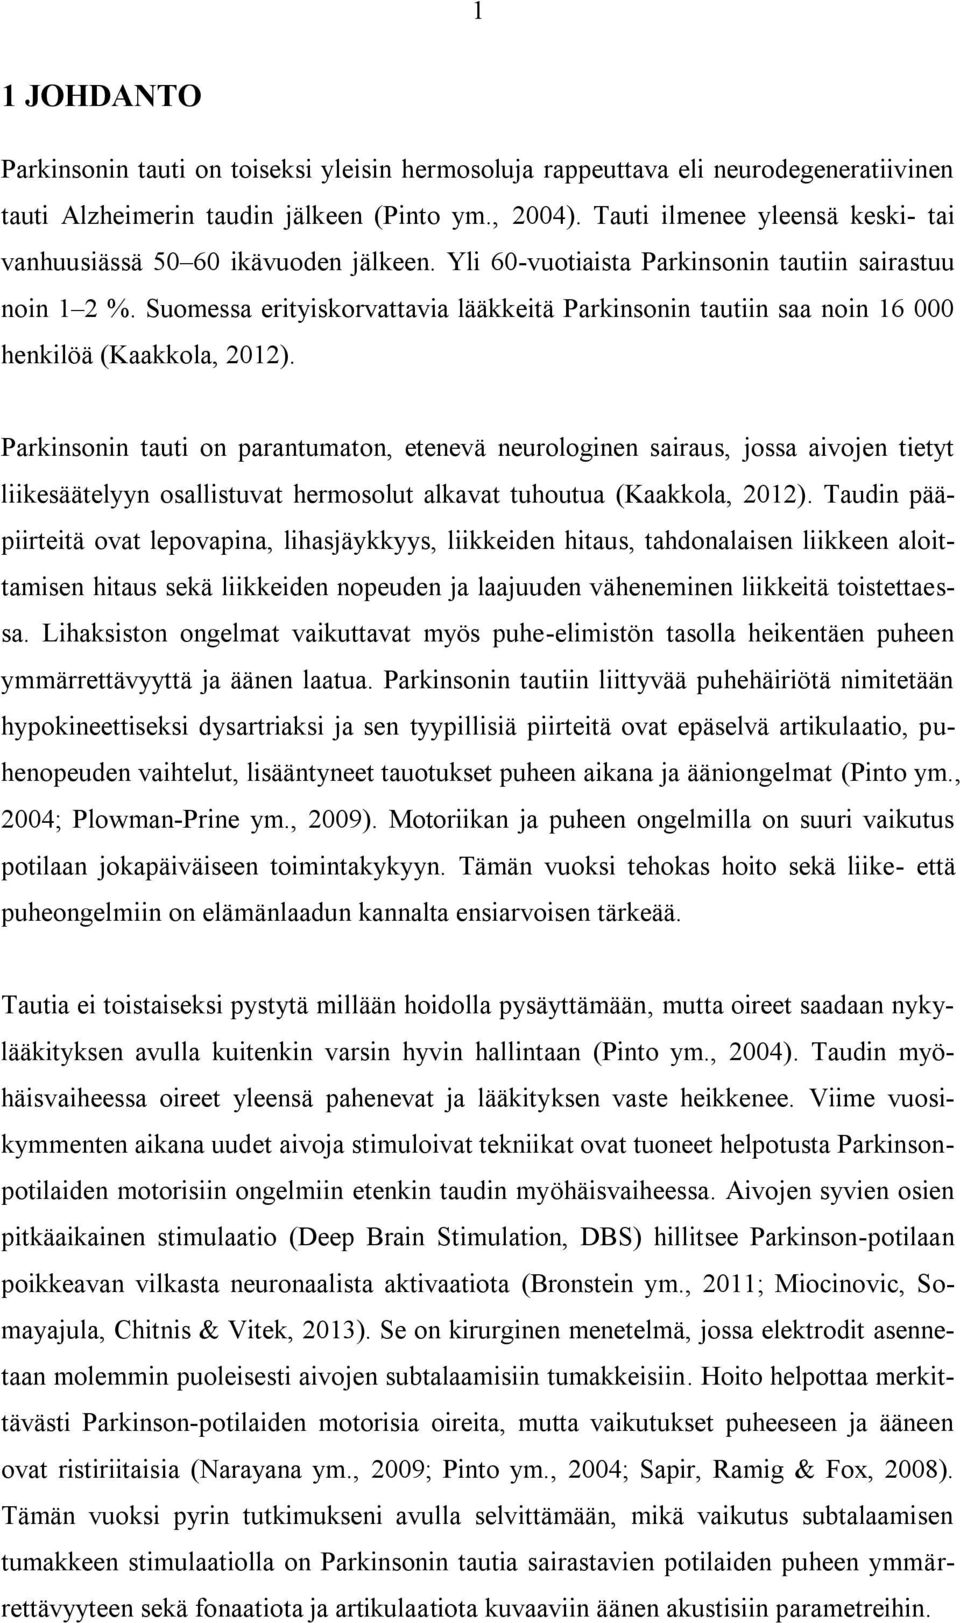 Suomessa erityiskorvattavia lääkkeitä Parkinsonin tautiin saa noin 16 000 henkilöä (Kaakkola, 2012).